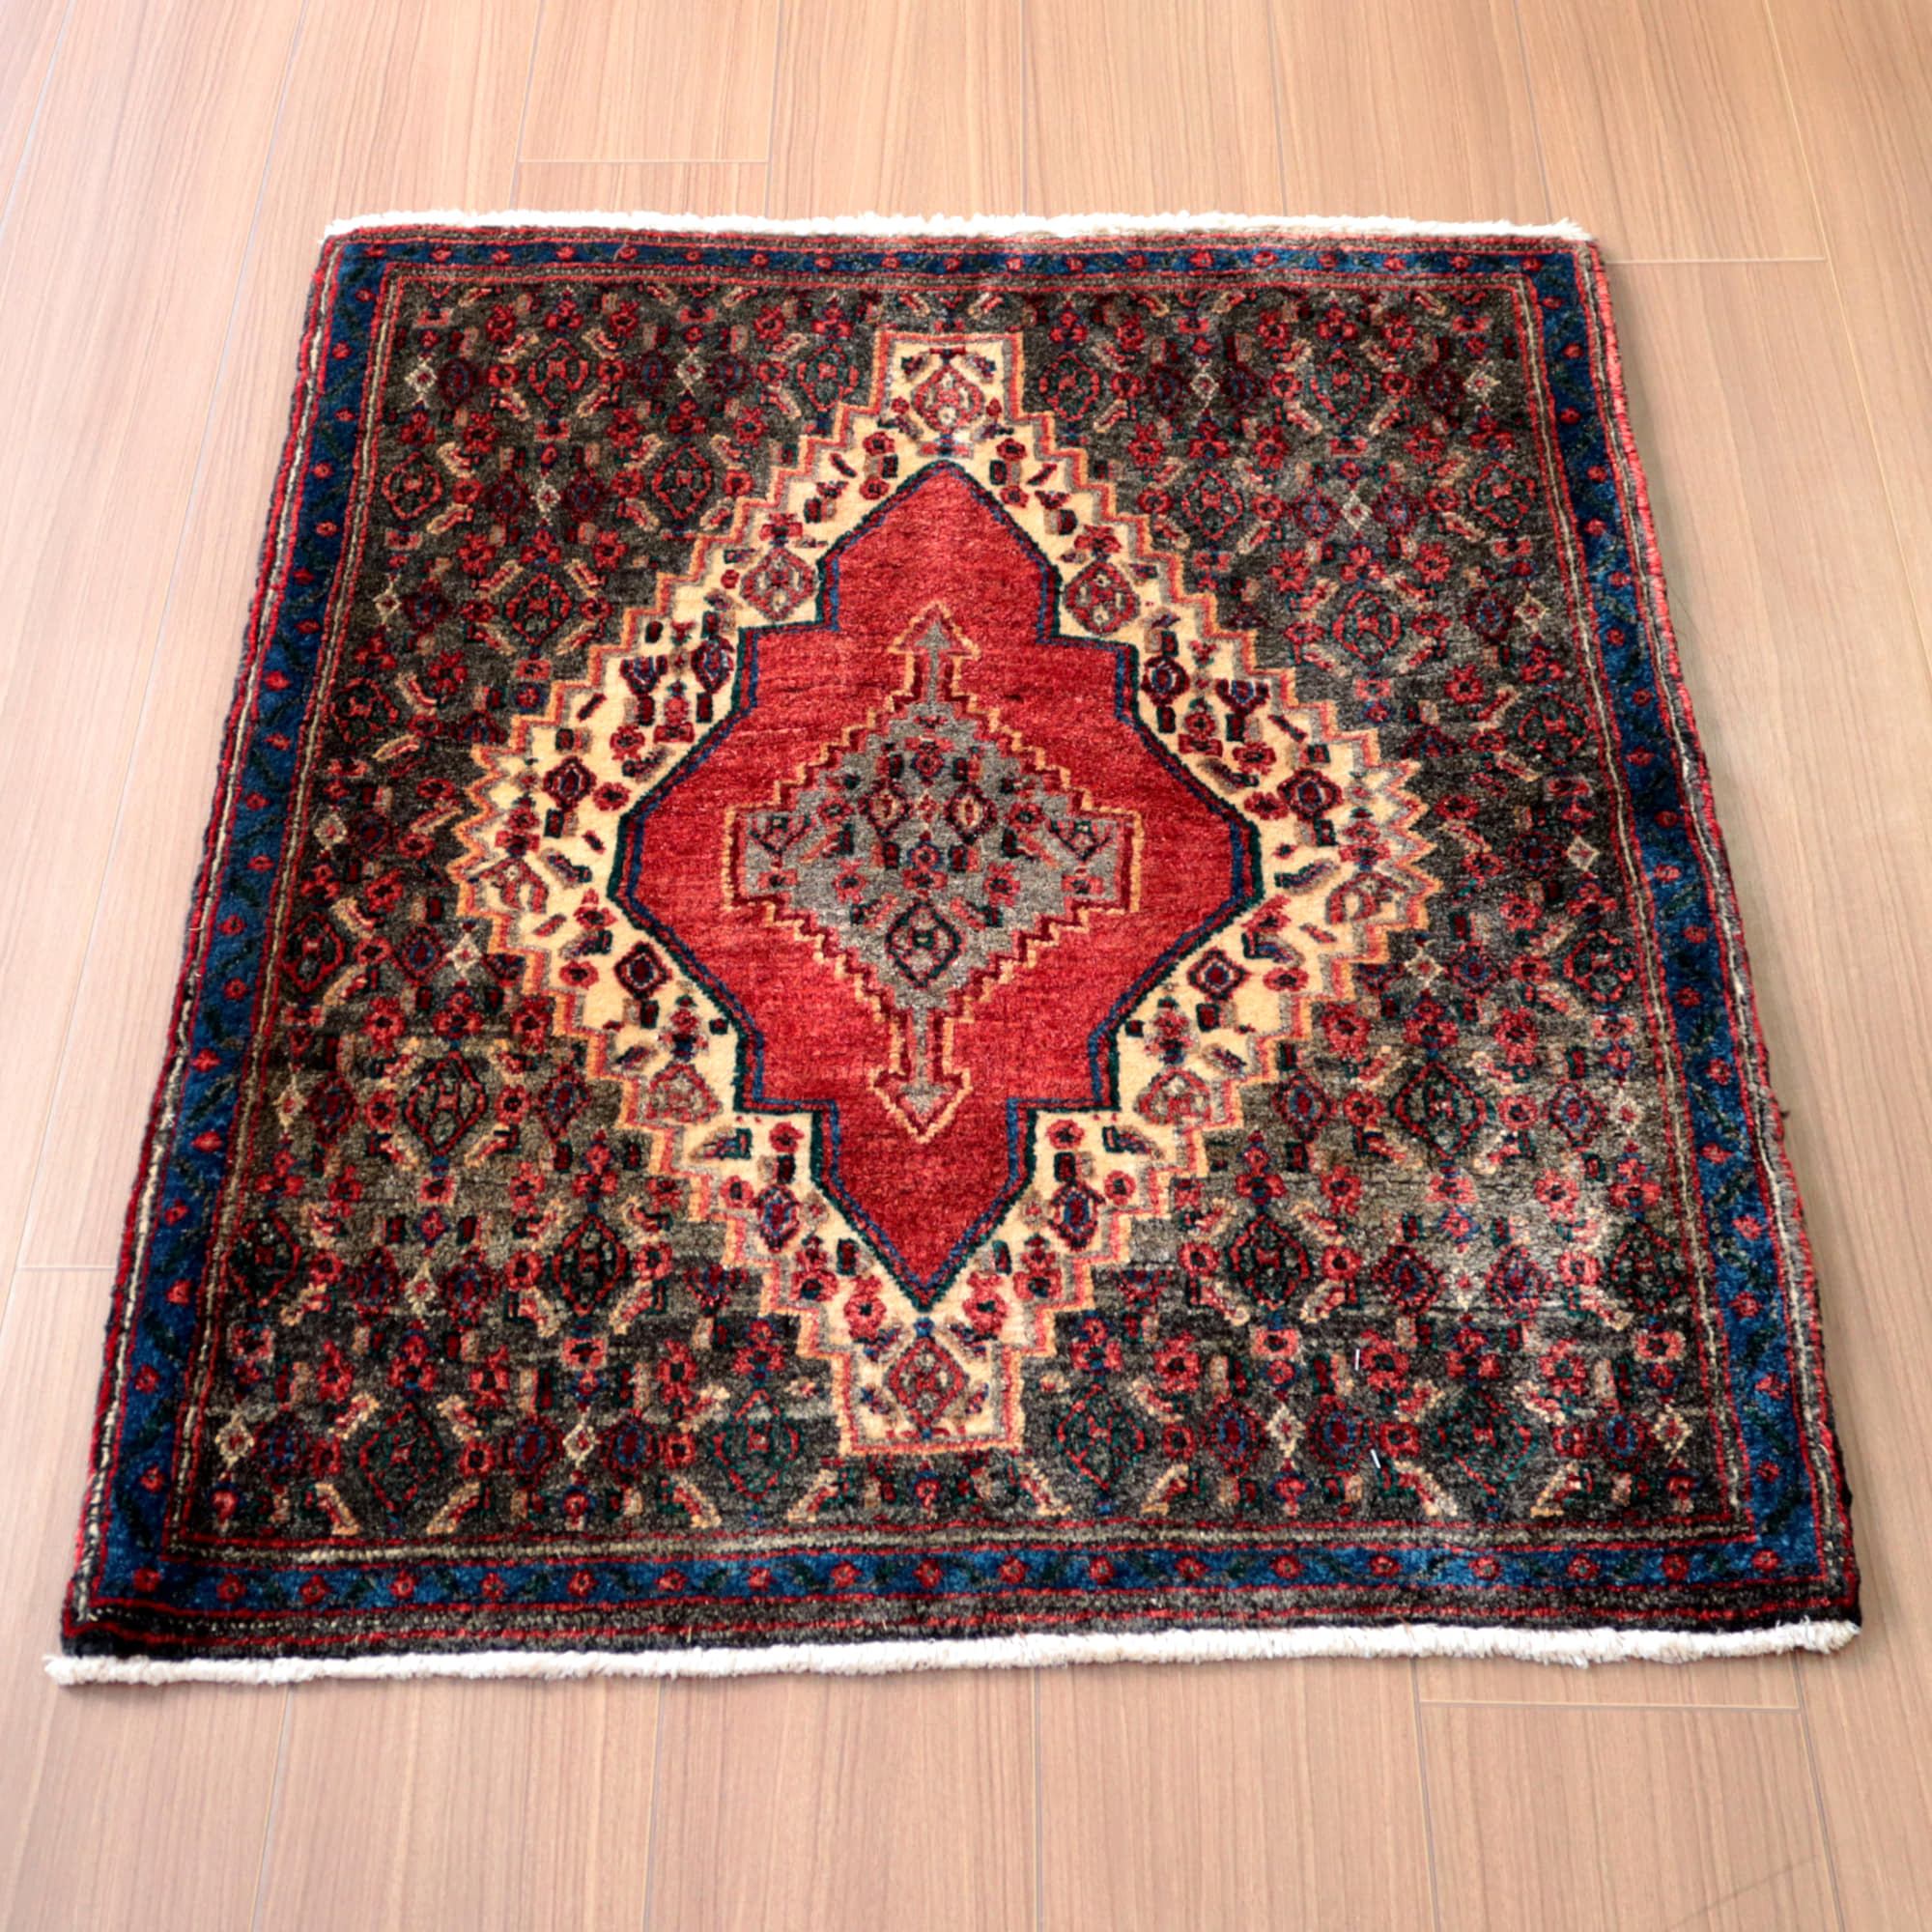 ペルシャじゅうたん　手織りラグ92×75cm 正方形に近いサイズ　赤いメダリオン